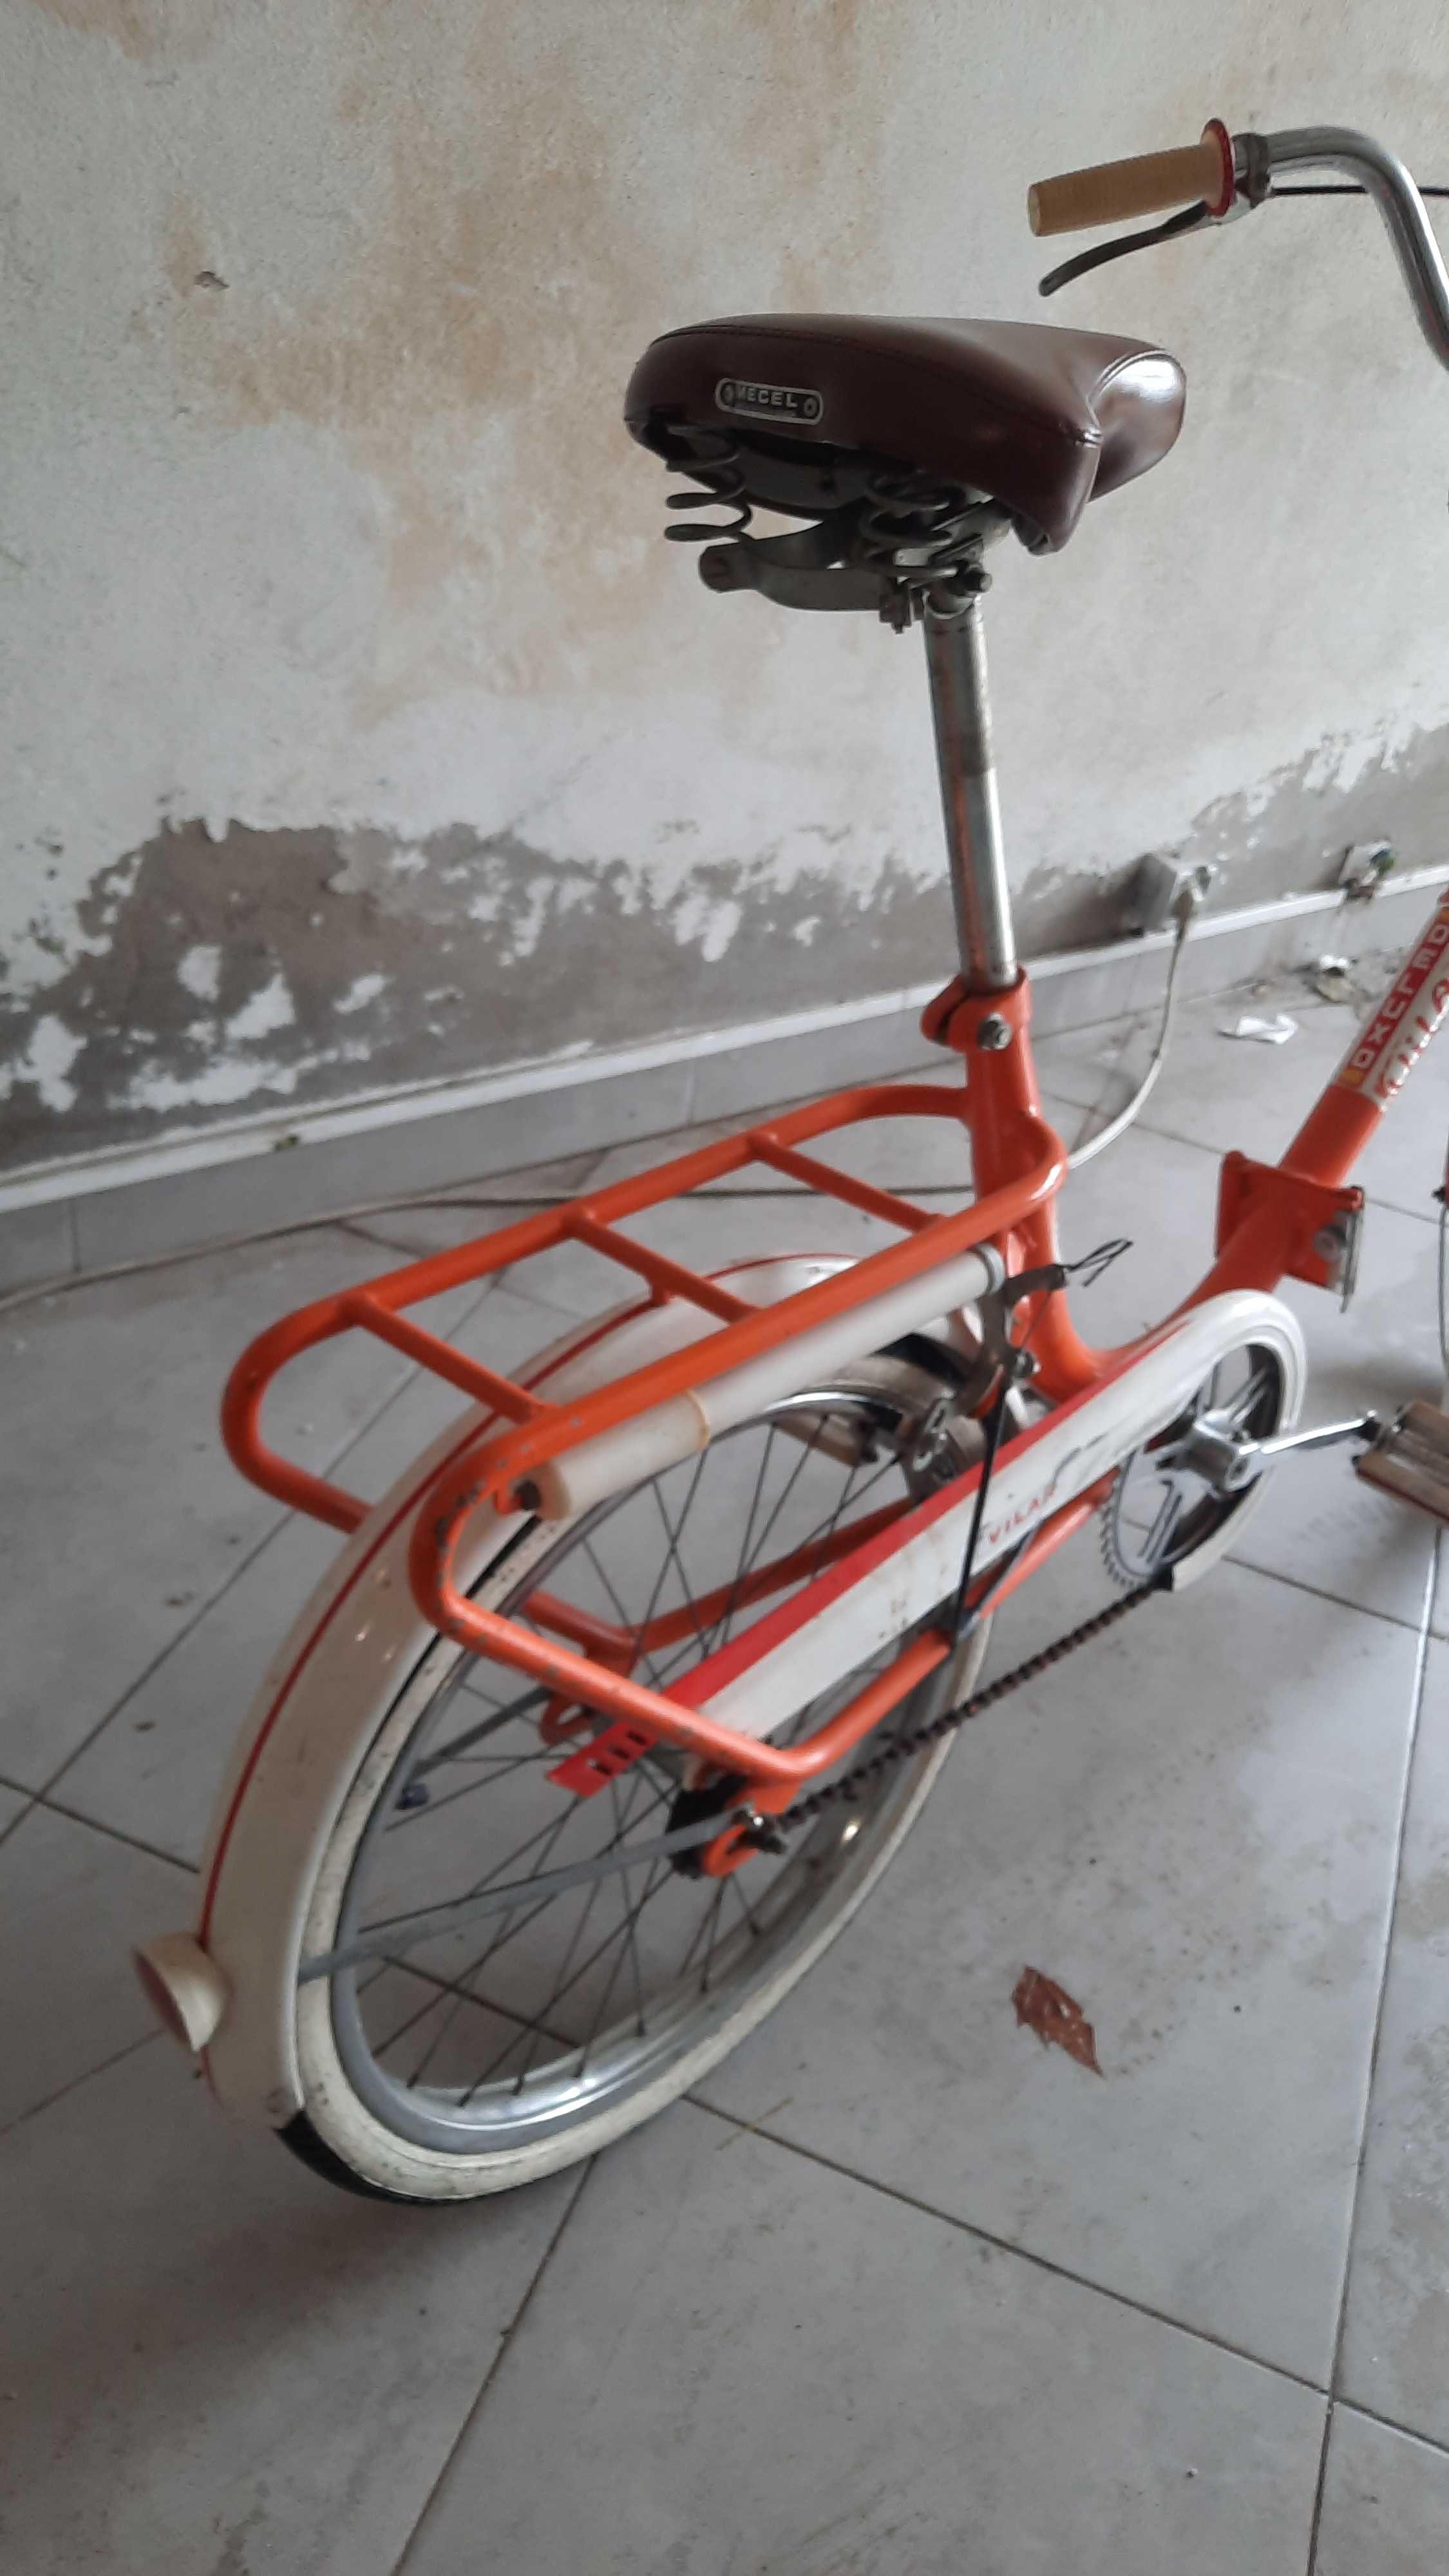 Bicicleta antiga portuguesa Vilar Deluxo roda 20 (Novo Preço)